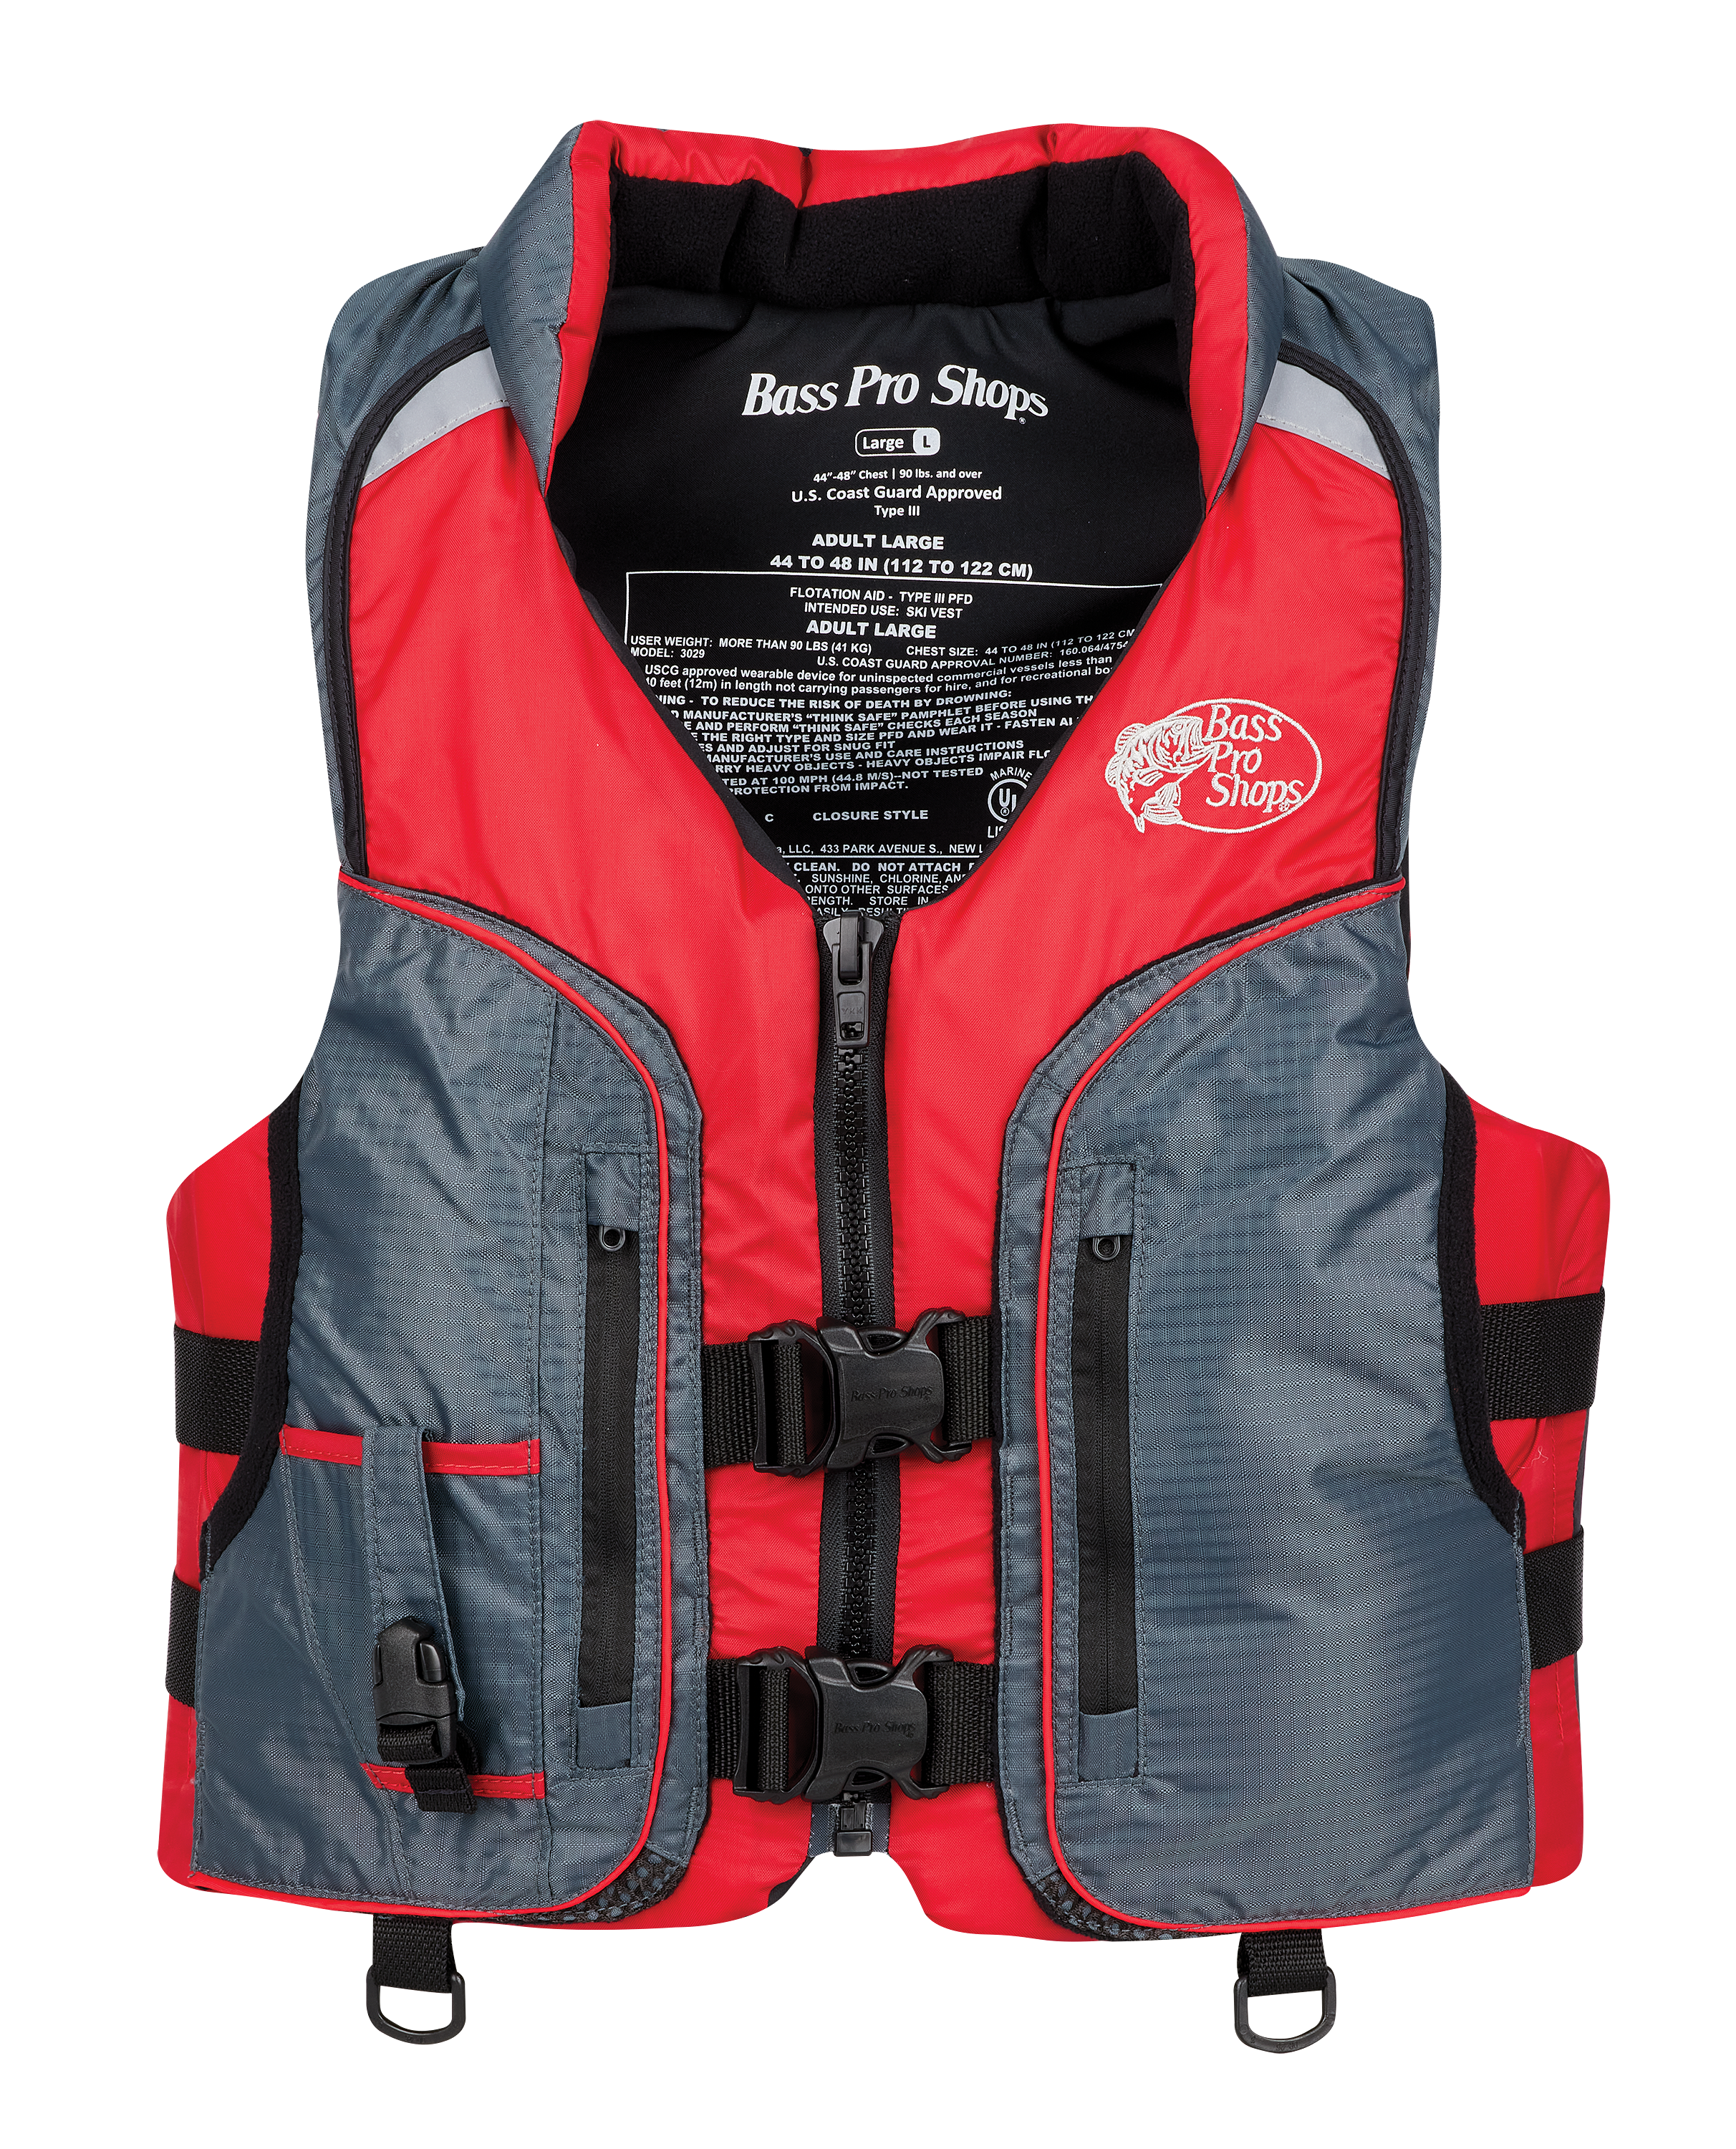 Fishing Life Jacket Multiple Pockets Floatation Vest Adults Waistcoat